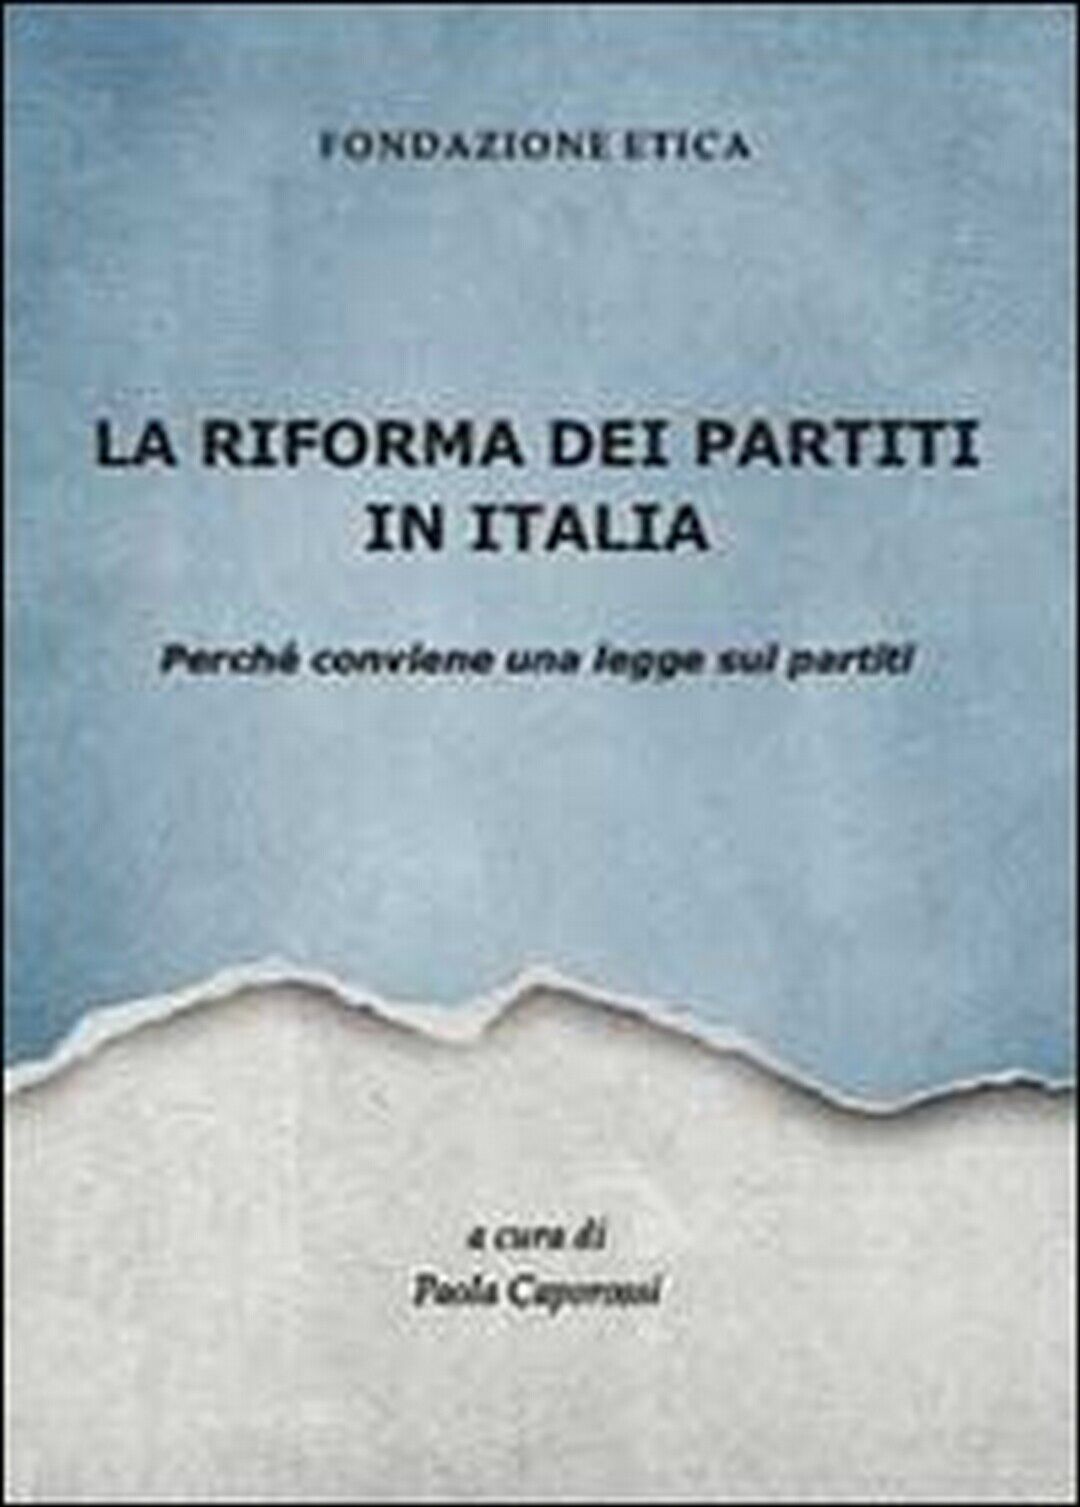 La riforma dei partiti in Italia. Perch? conviene una legge sui partiti  